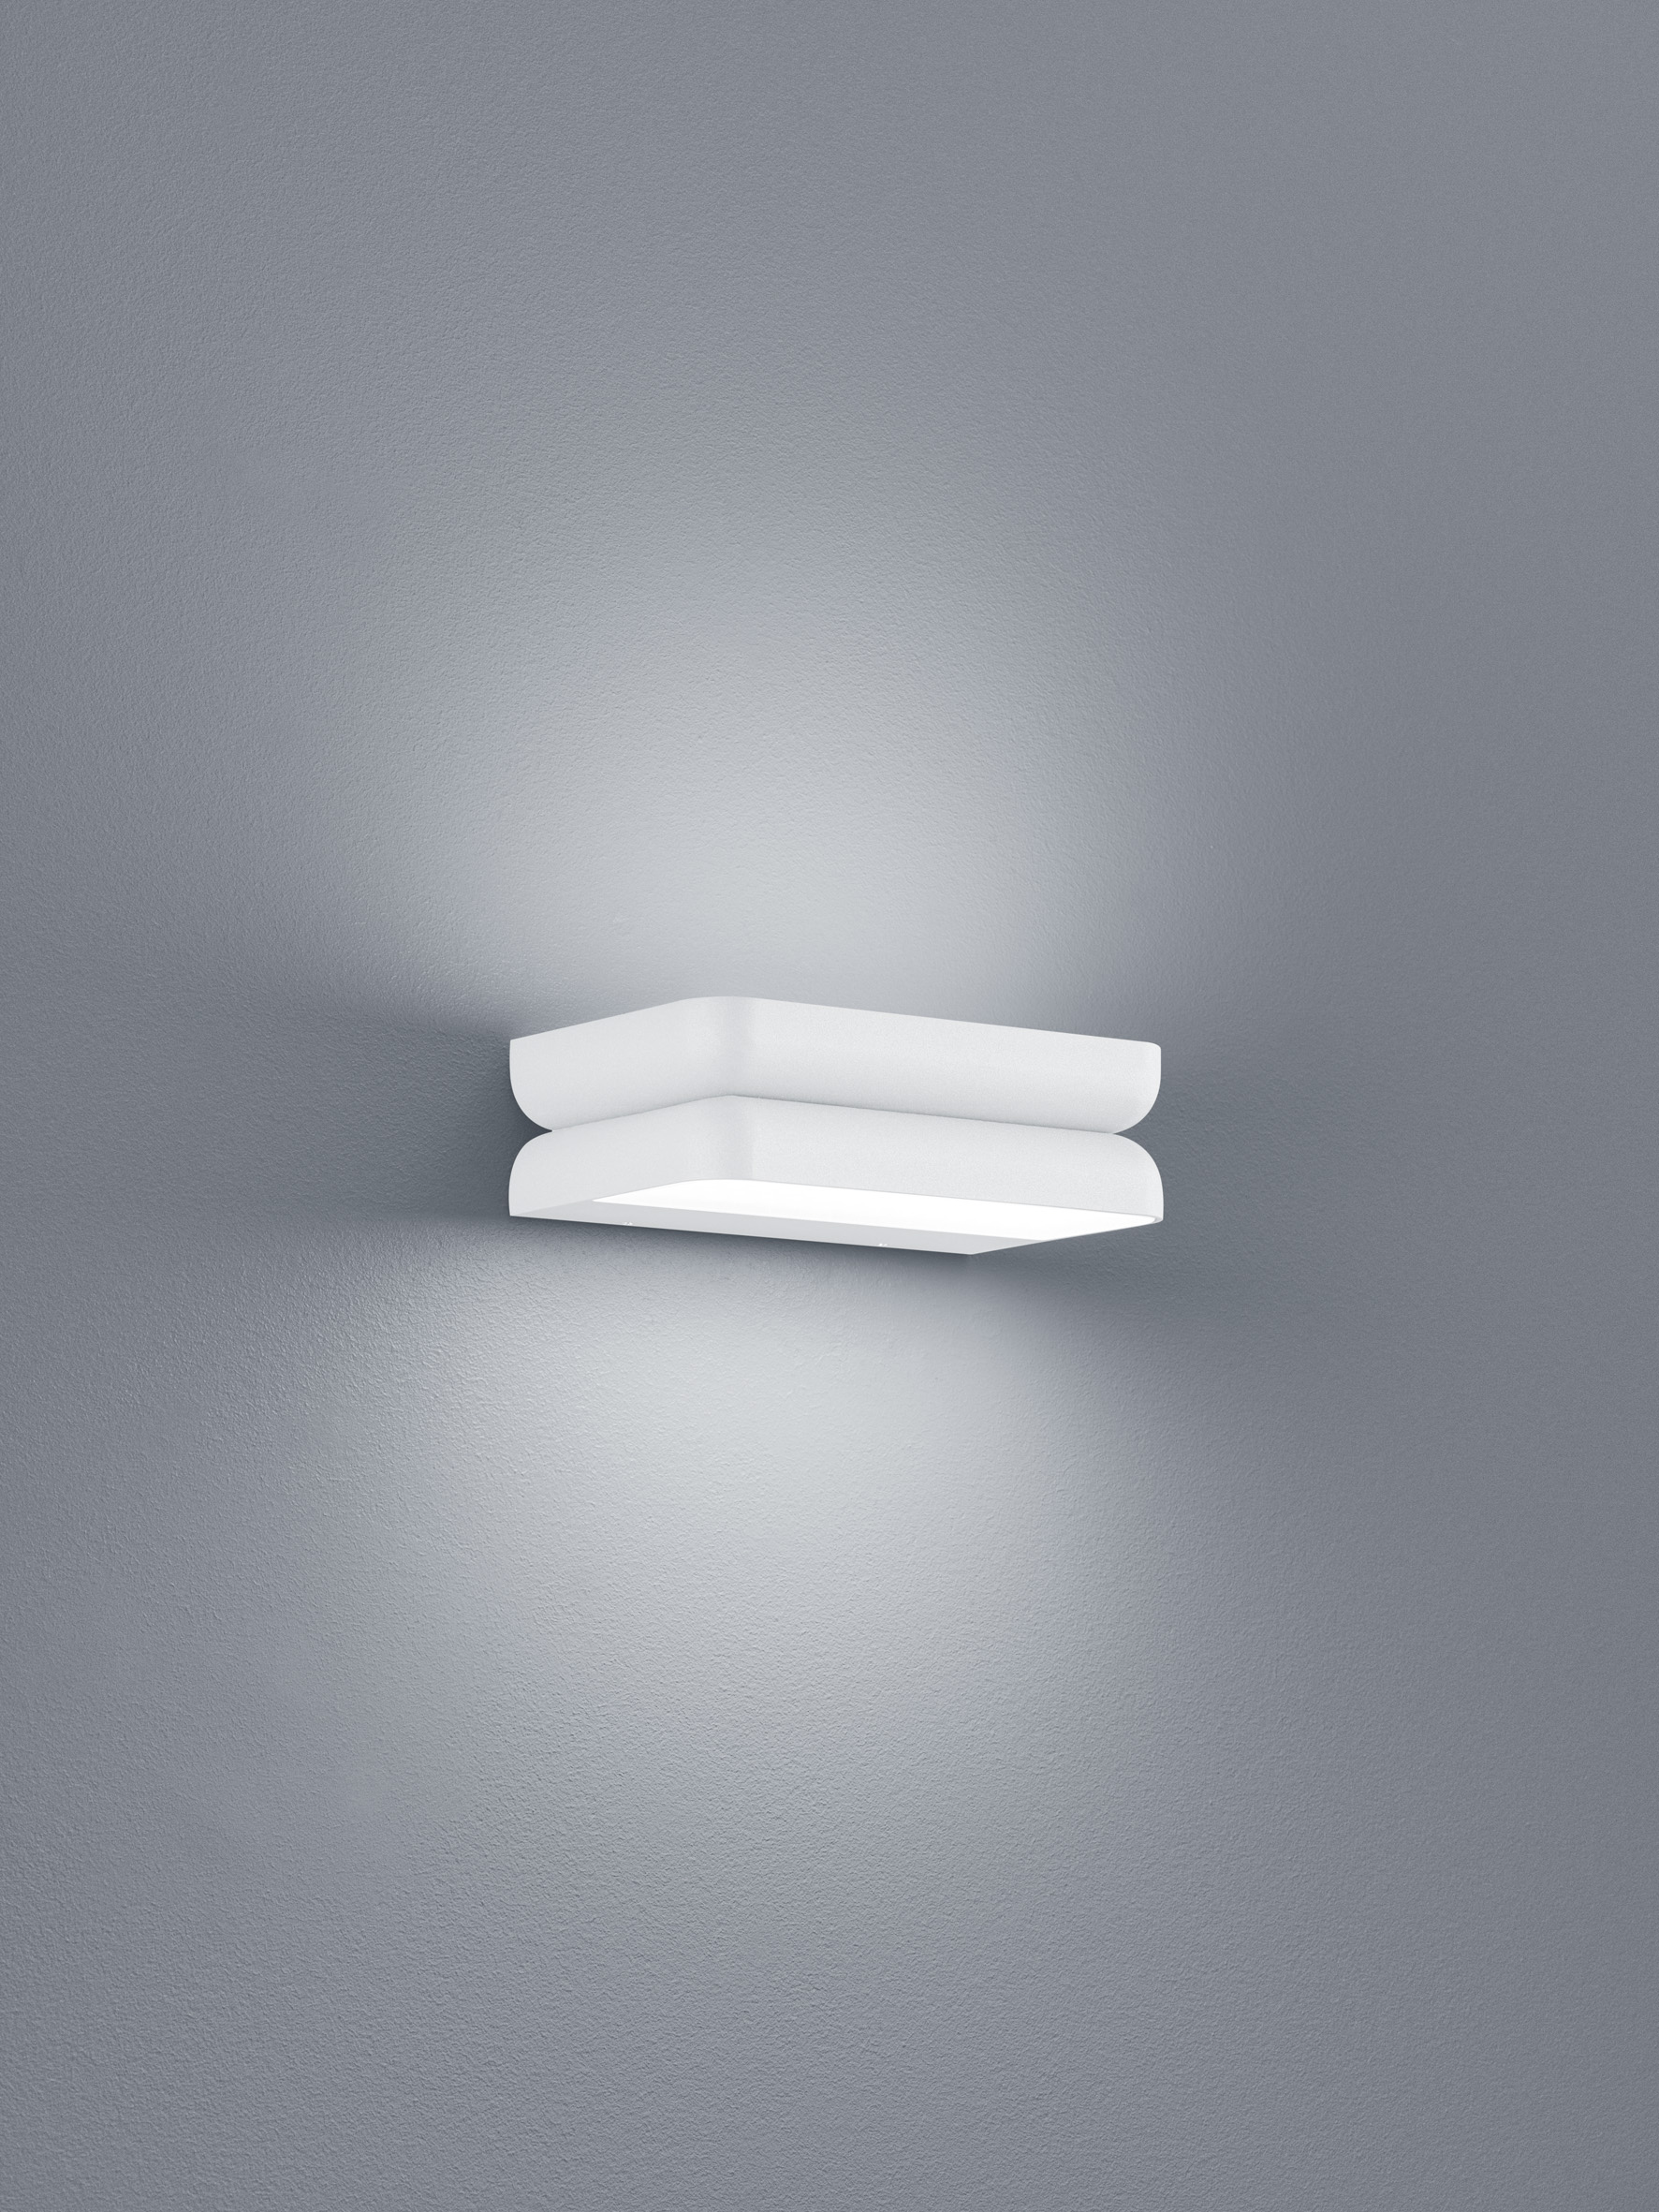 Helestra LeuchtenSNAP LED-Wandleuchte - Lagerräumung -